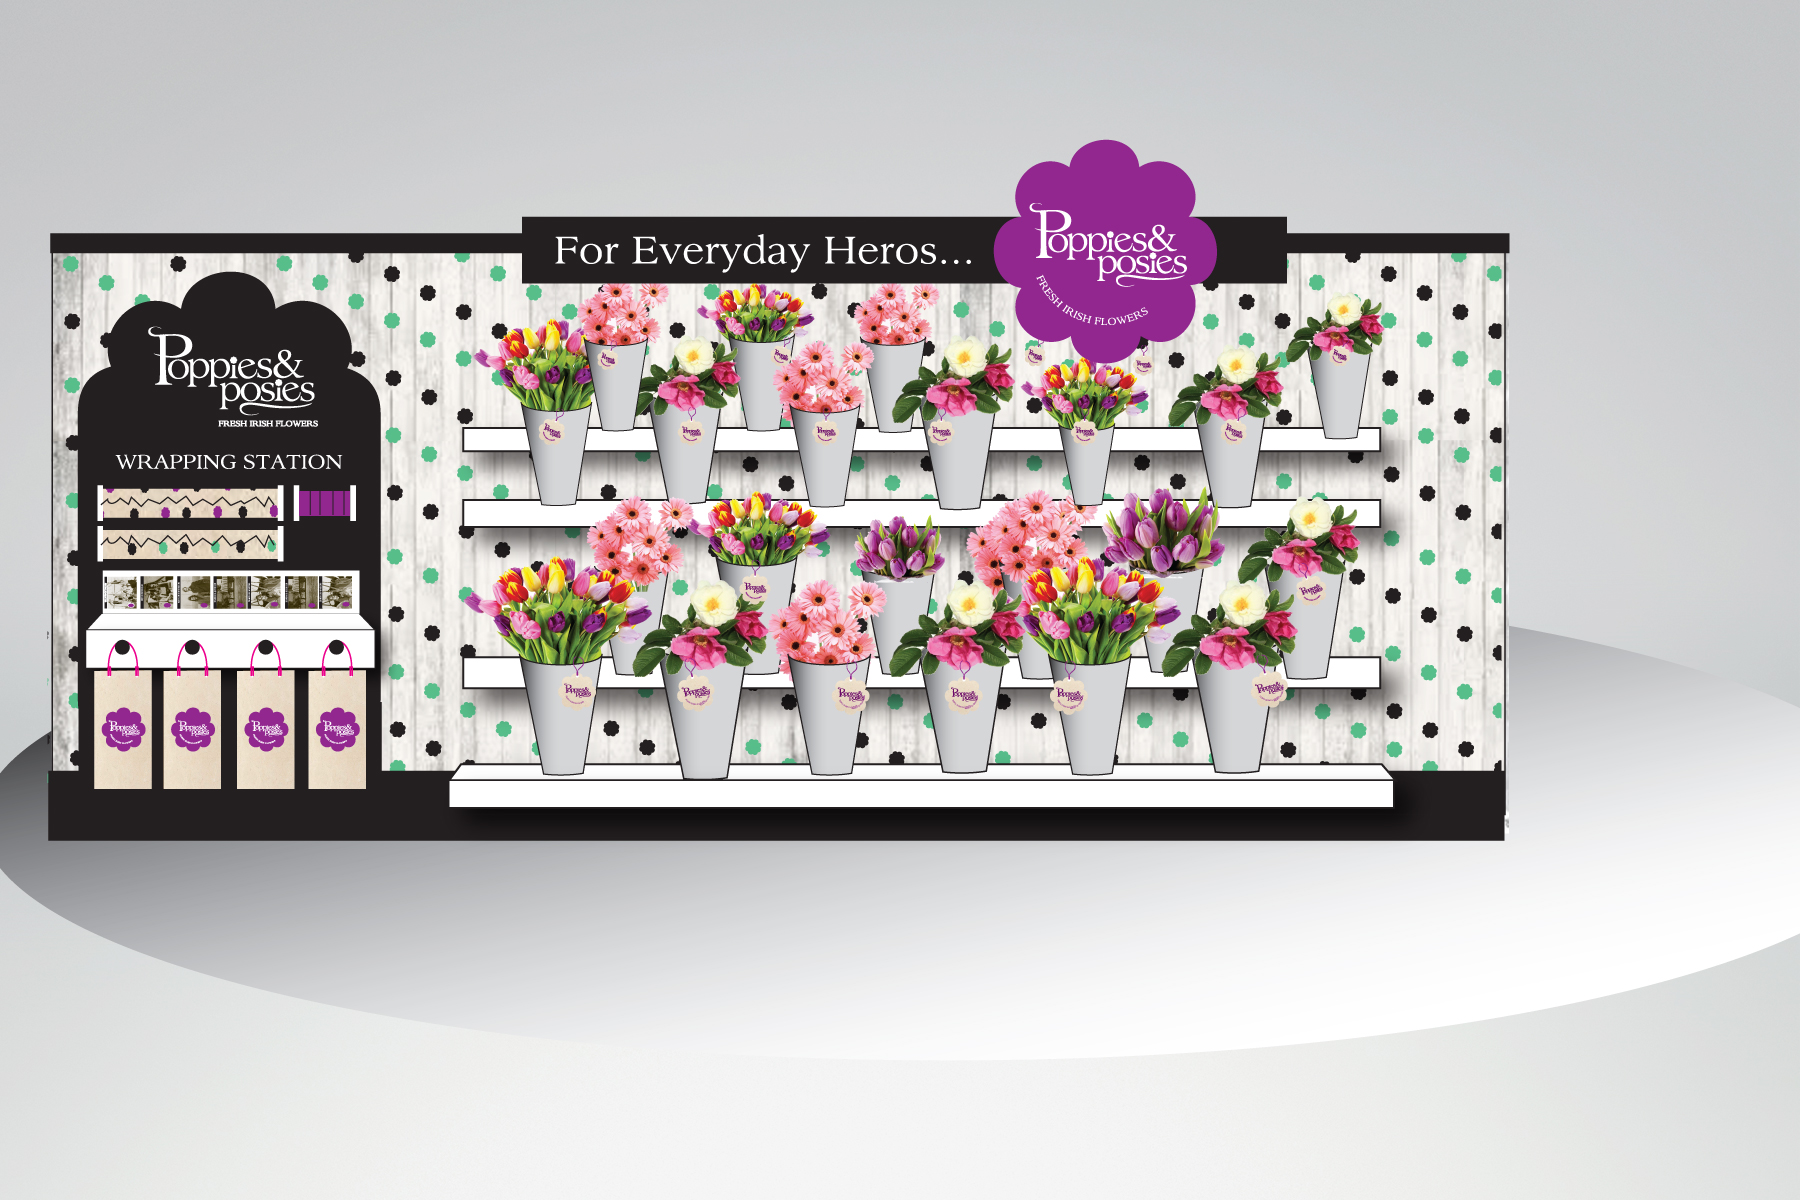 Poppies-posies-instore-display.jpg